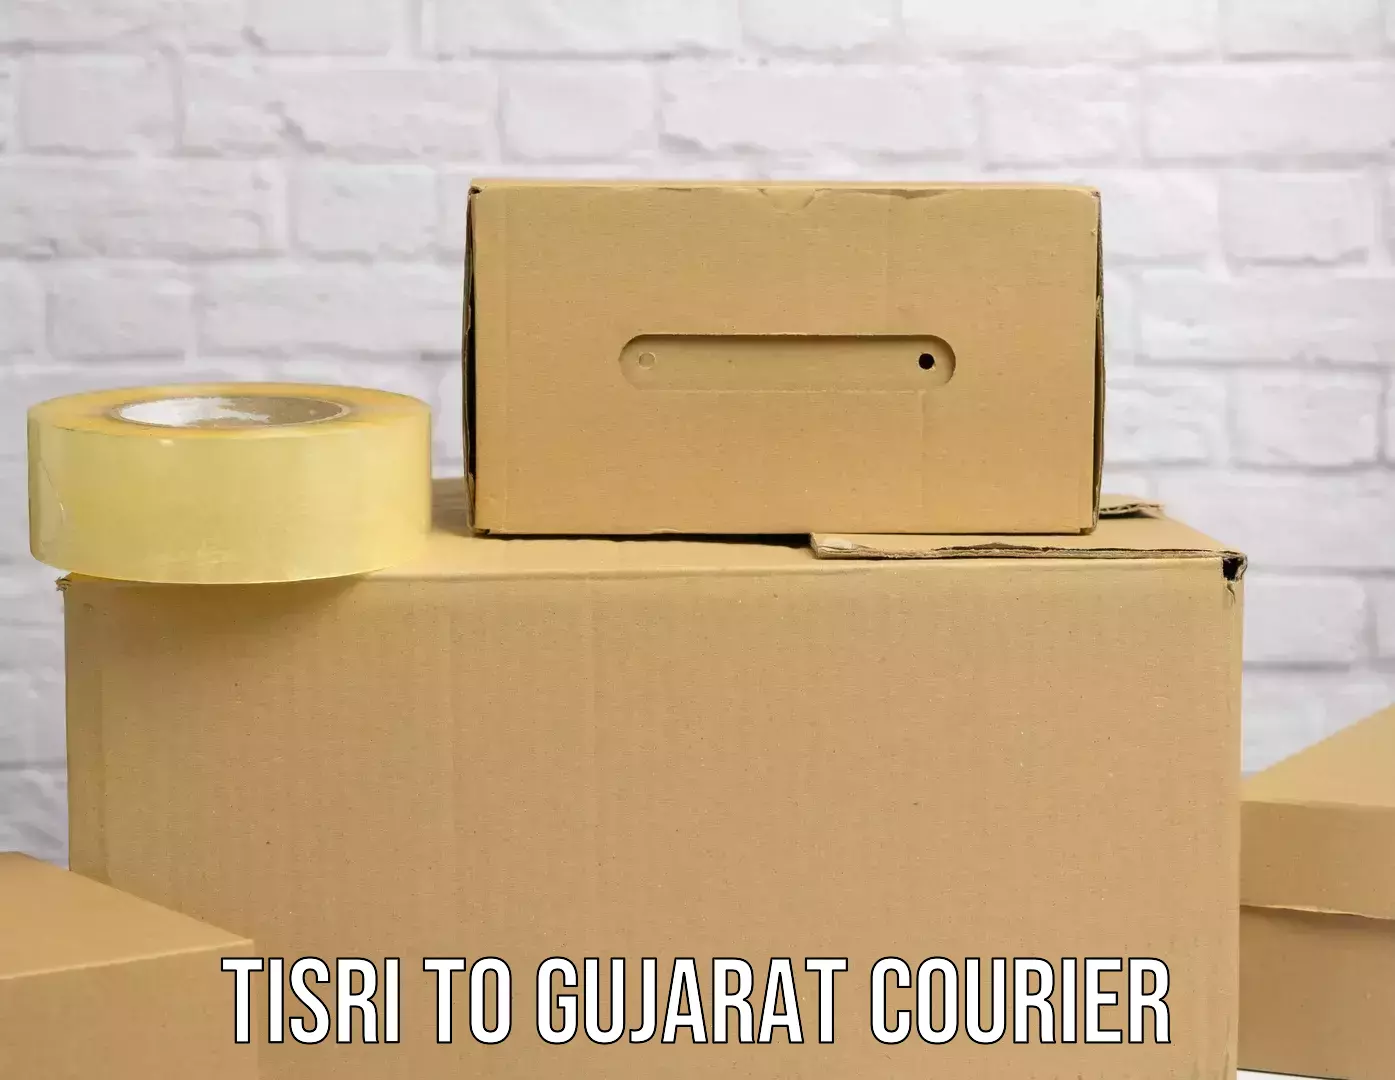 Digital courier platforms Tisri to Gandhidham